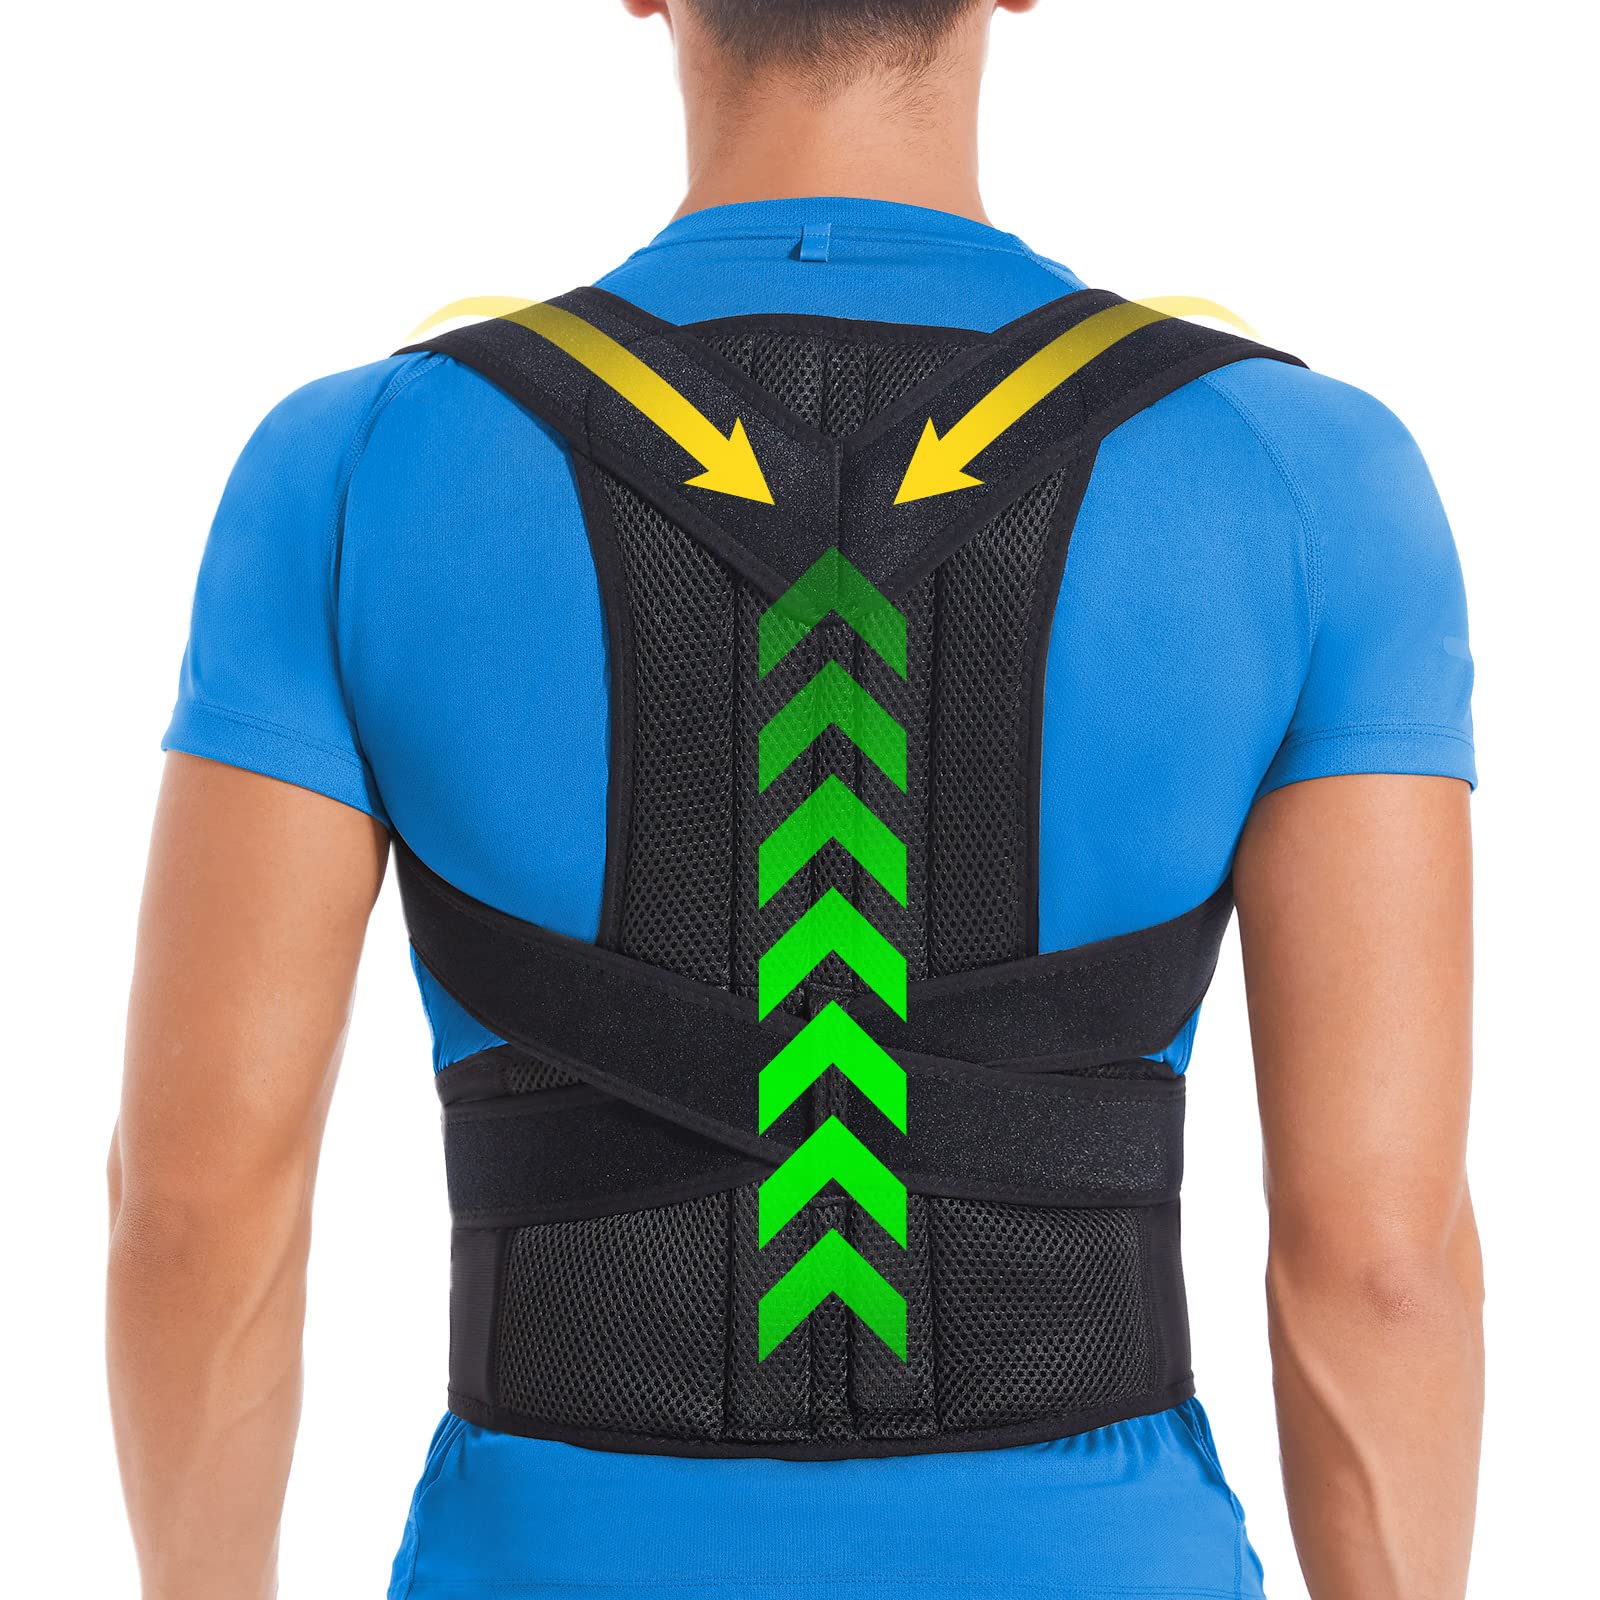 Posture Correction Lower Back Pain Adjustable Back Support Posture